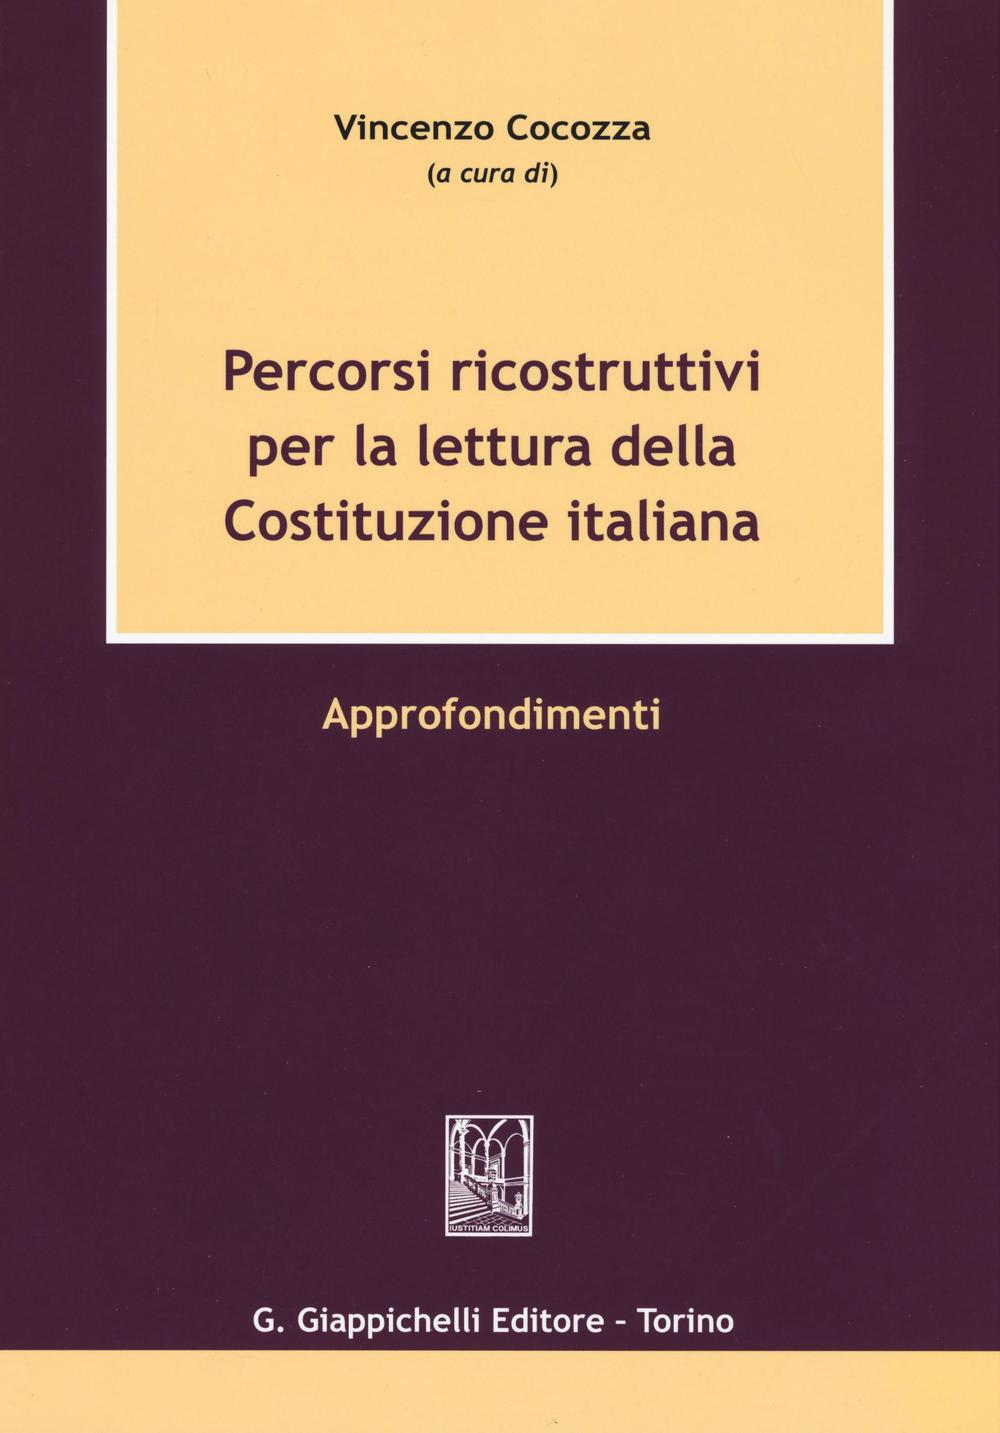 Image of Percorsi ricostruttivi per la lettura della Costituzione italiana. Approfondimenti